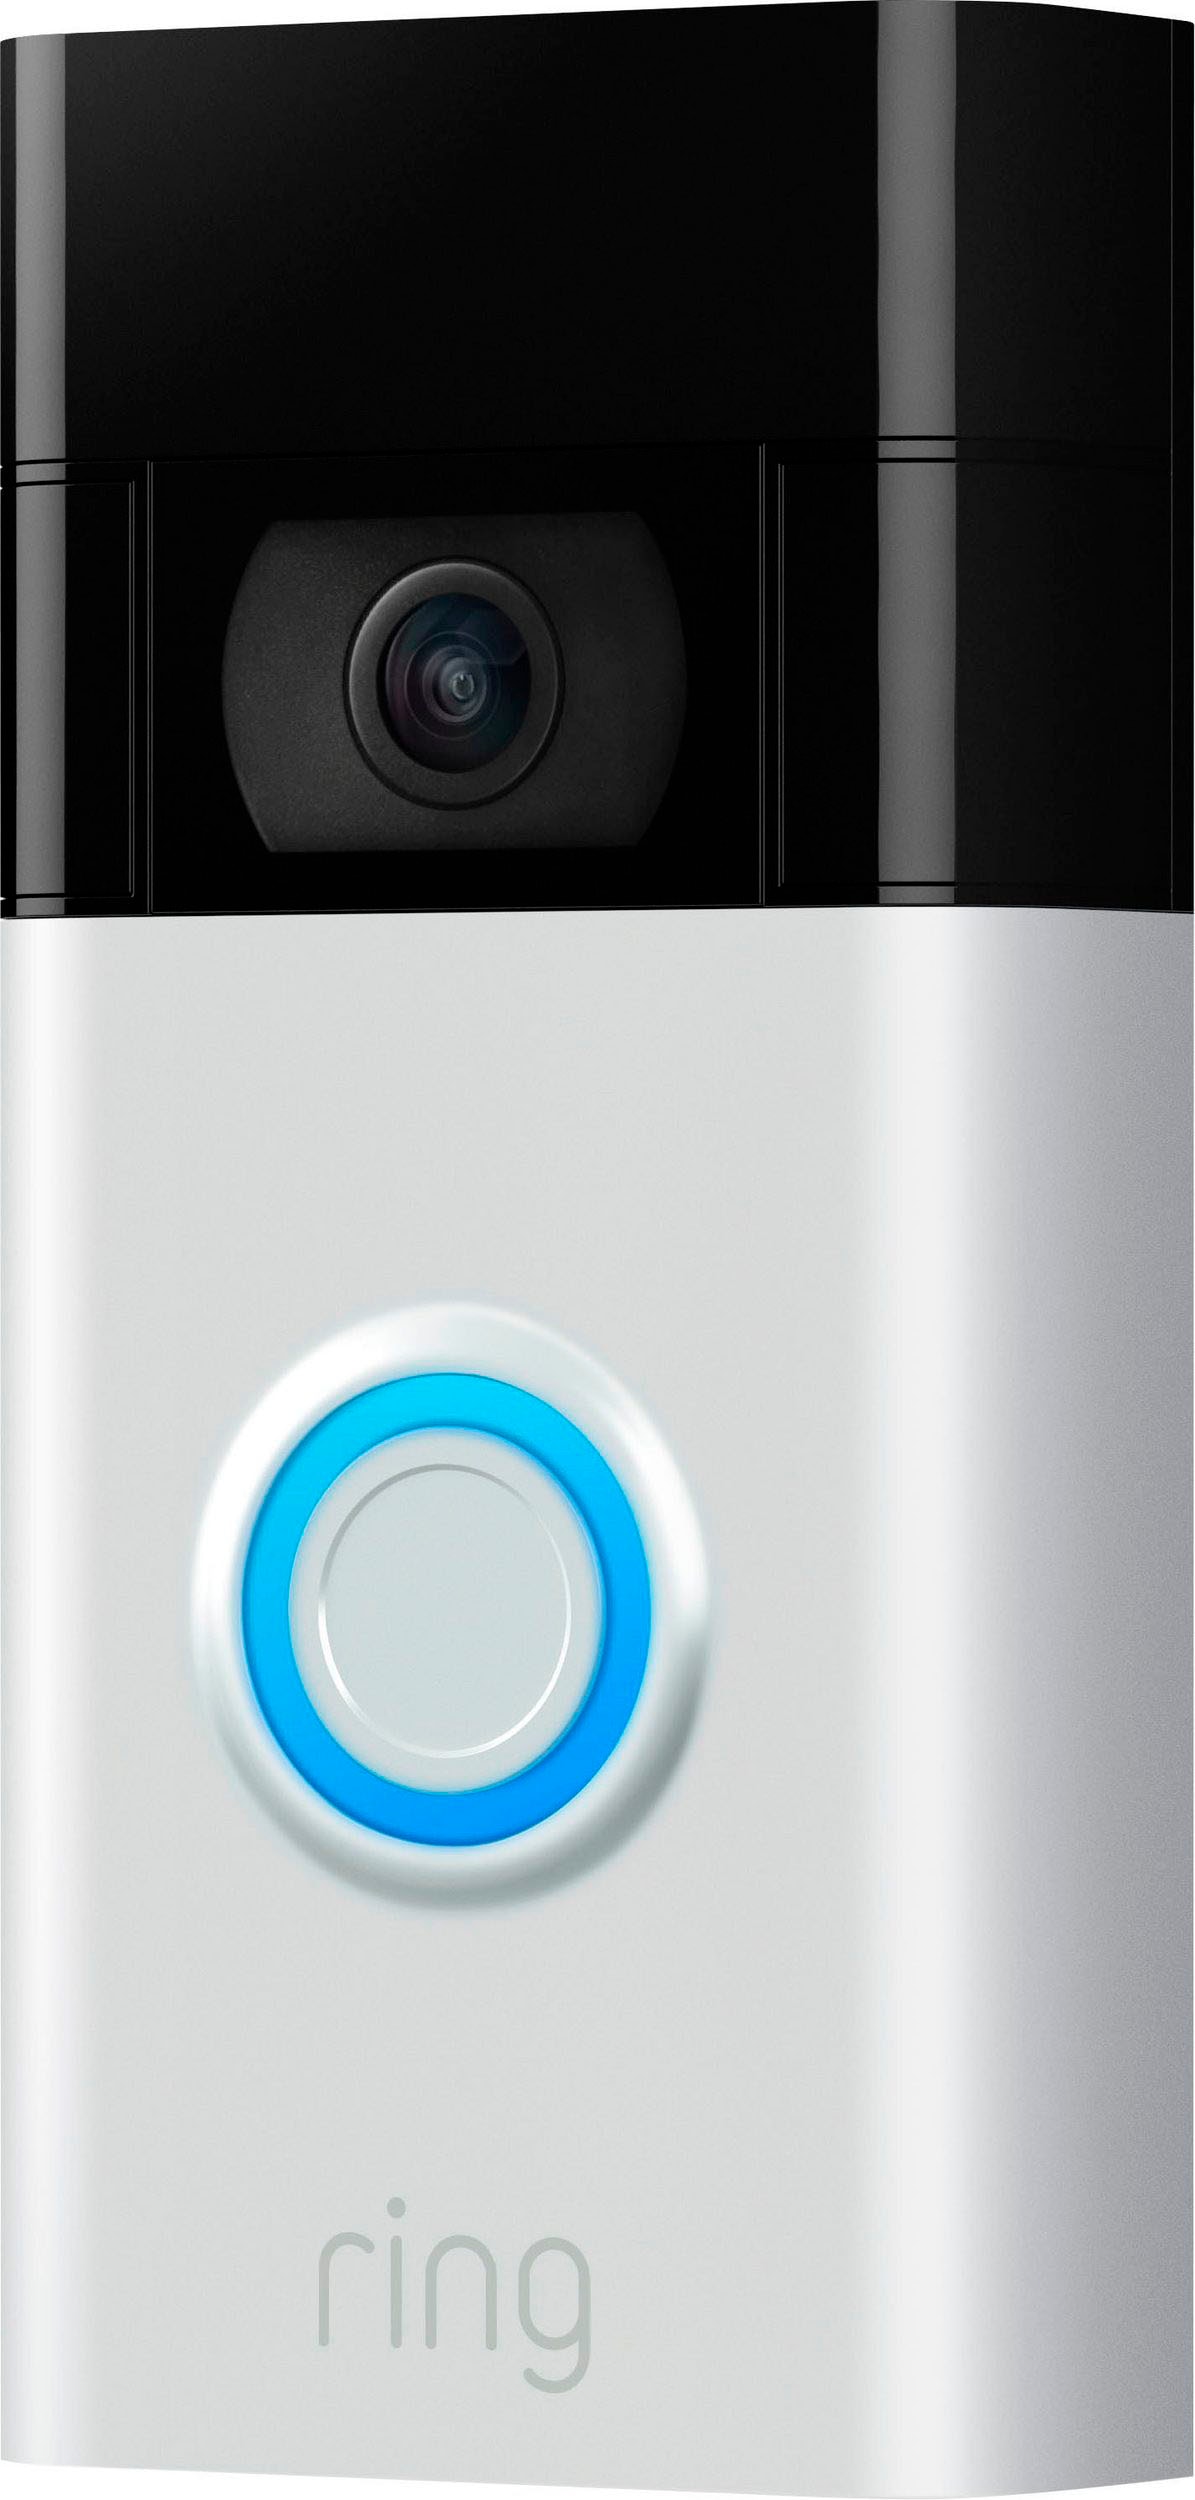 Ring Überwachungskamera »Video Doorbell«, Aussenbereich